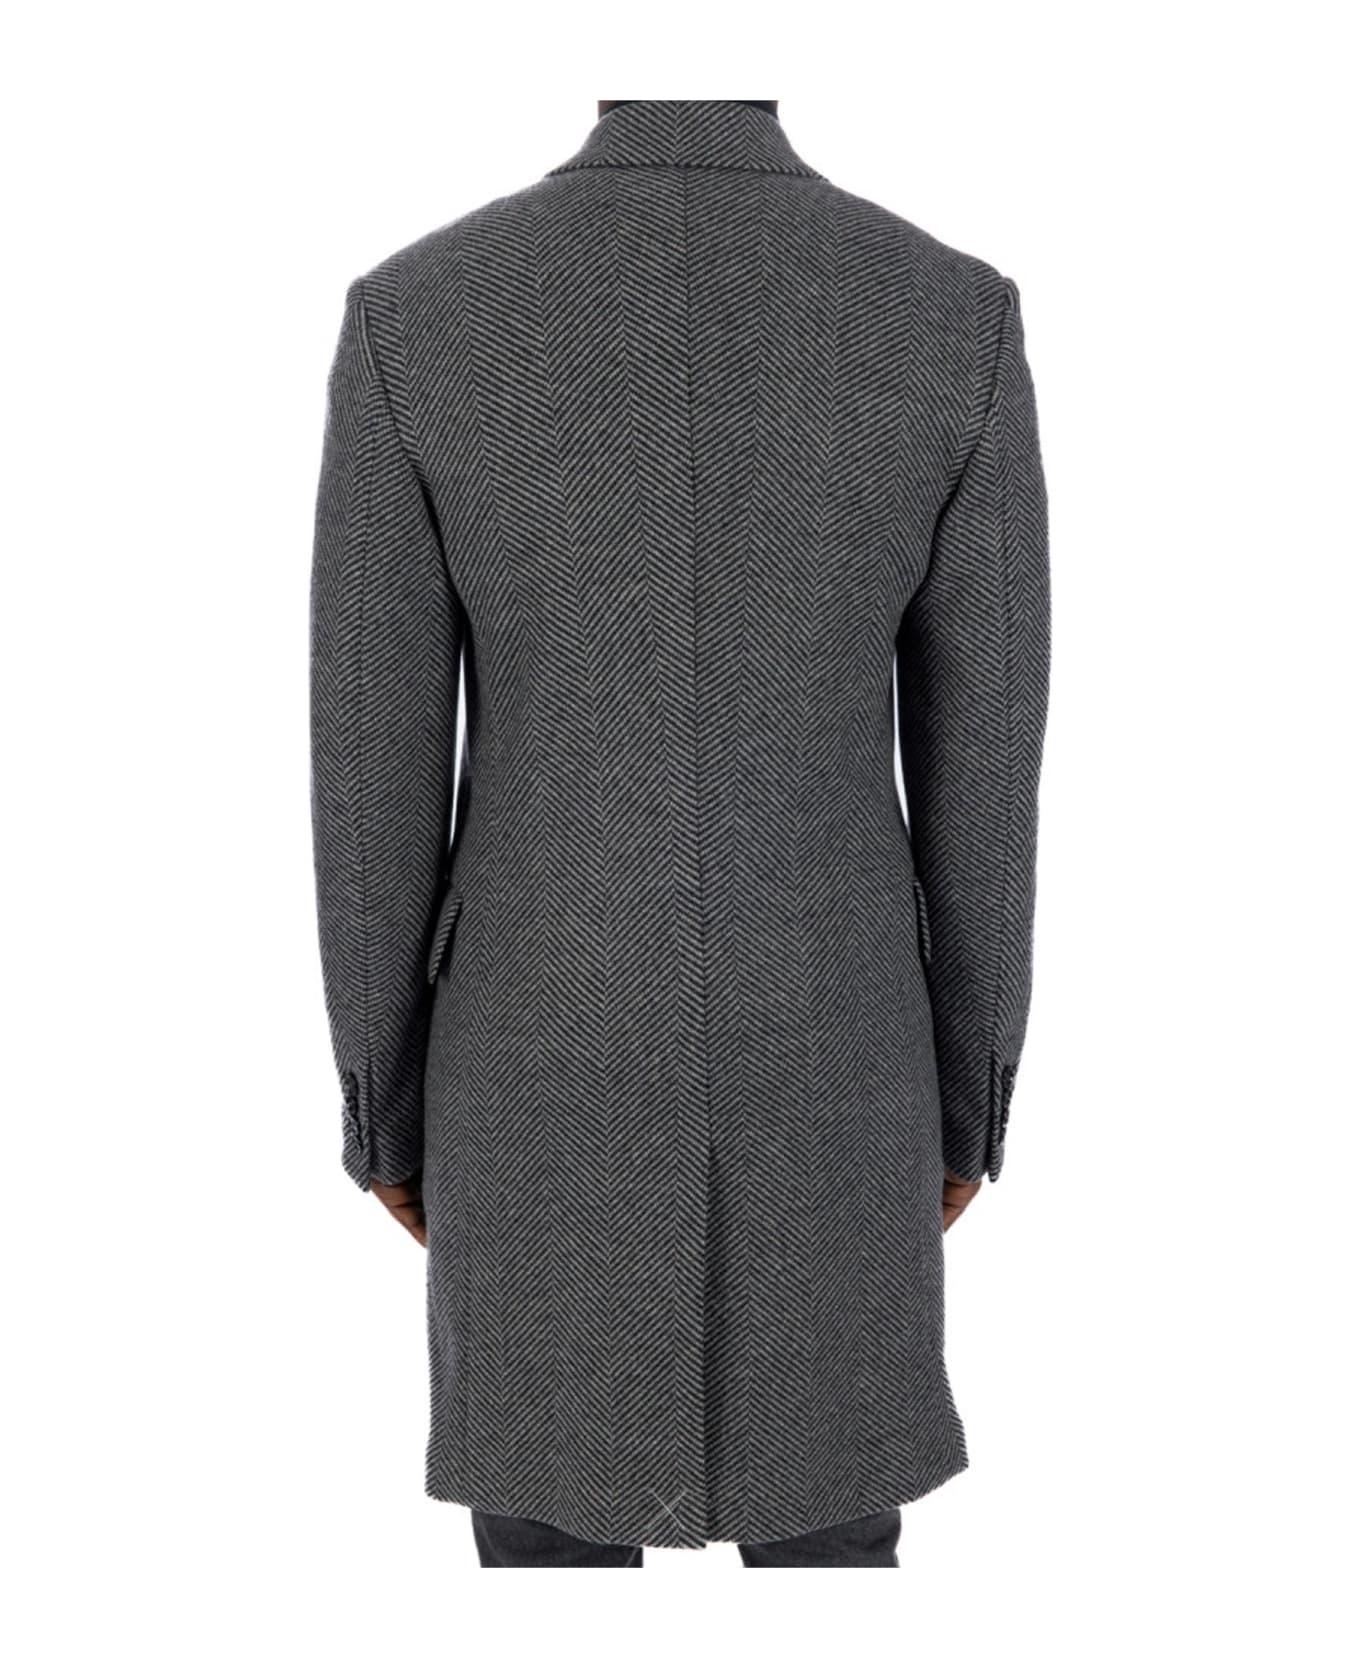 Dolce & Gabbana Wool Coat - Gray